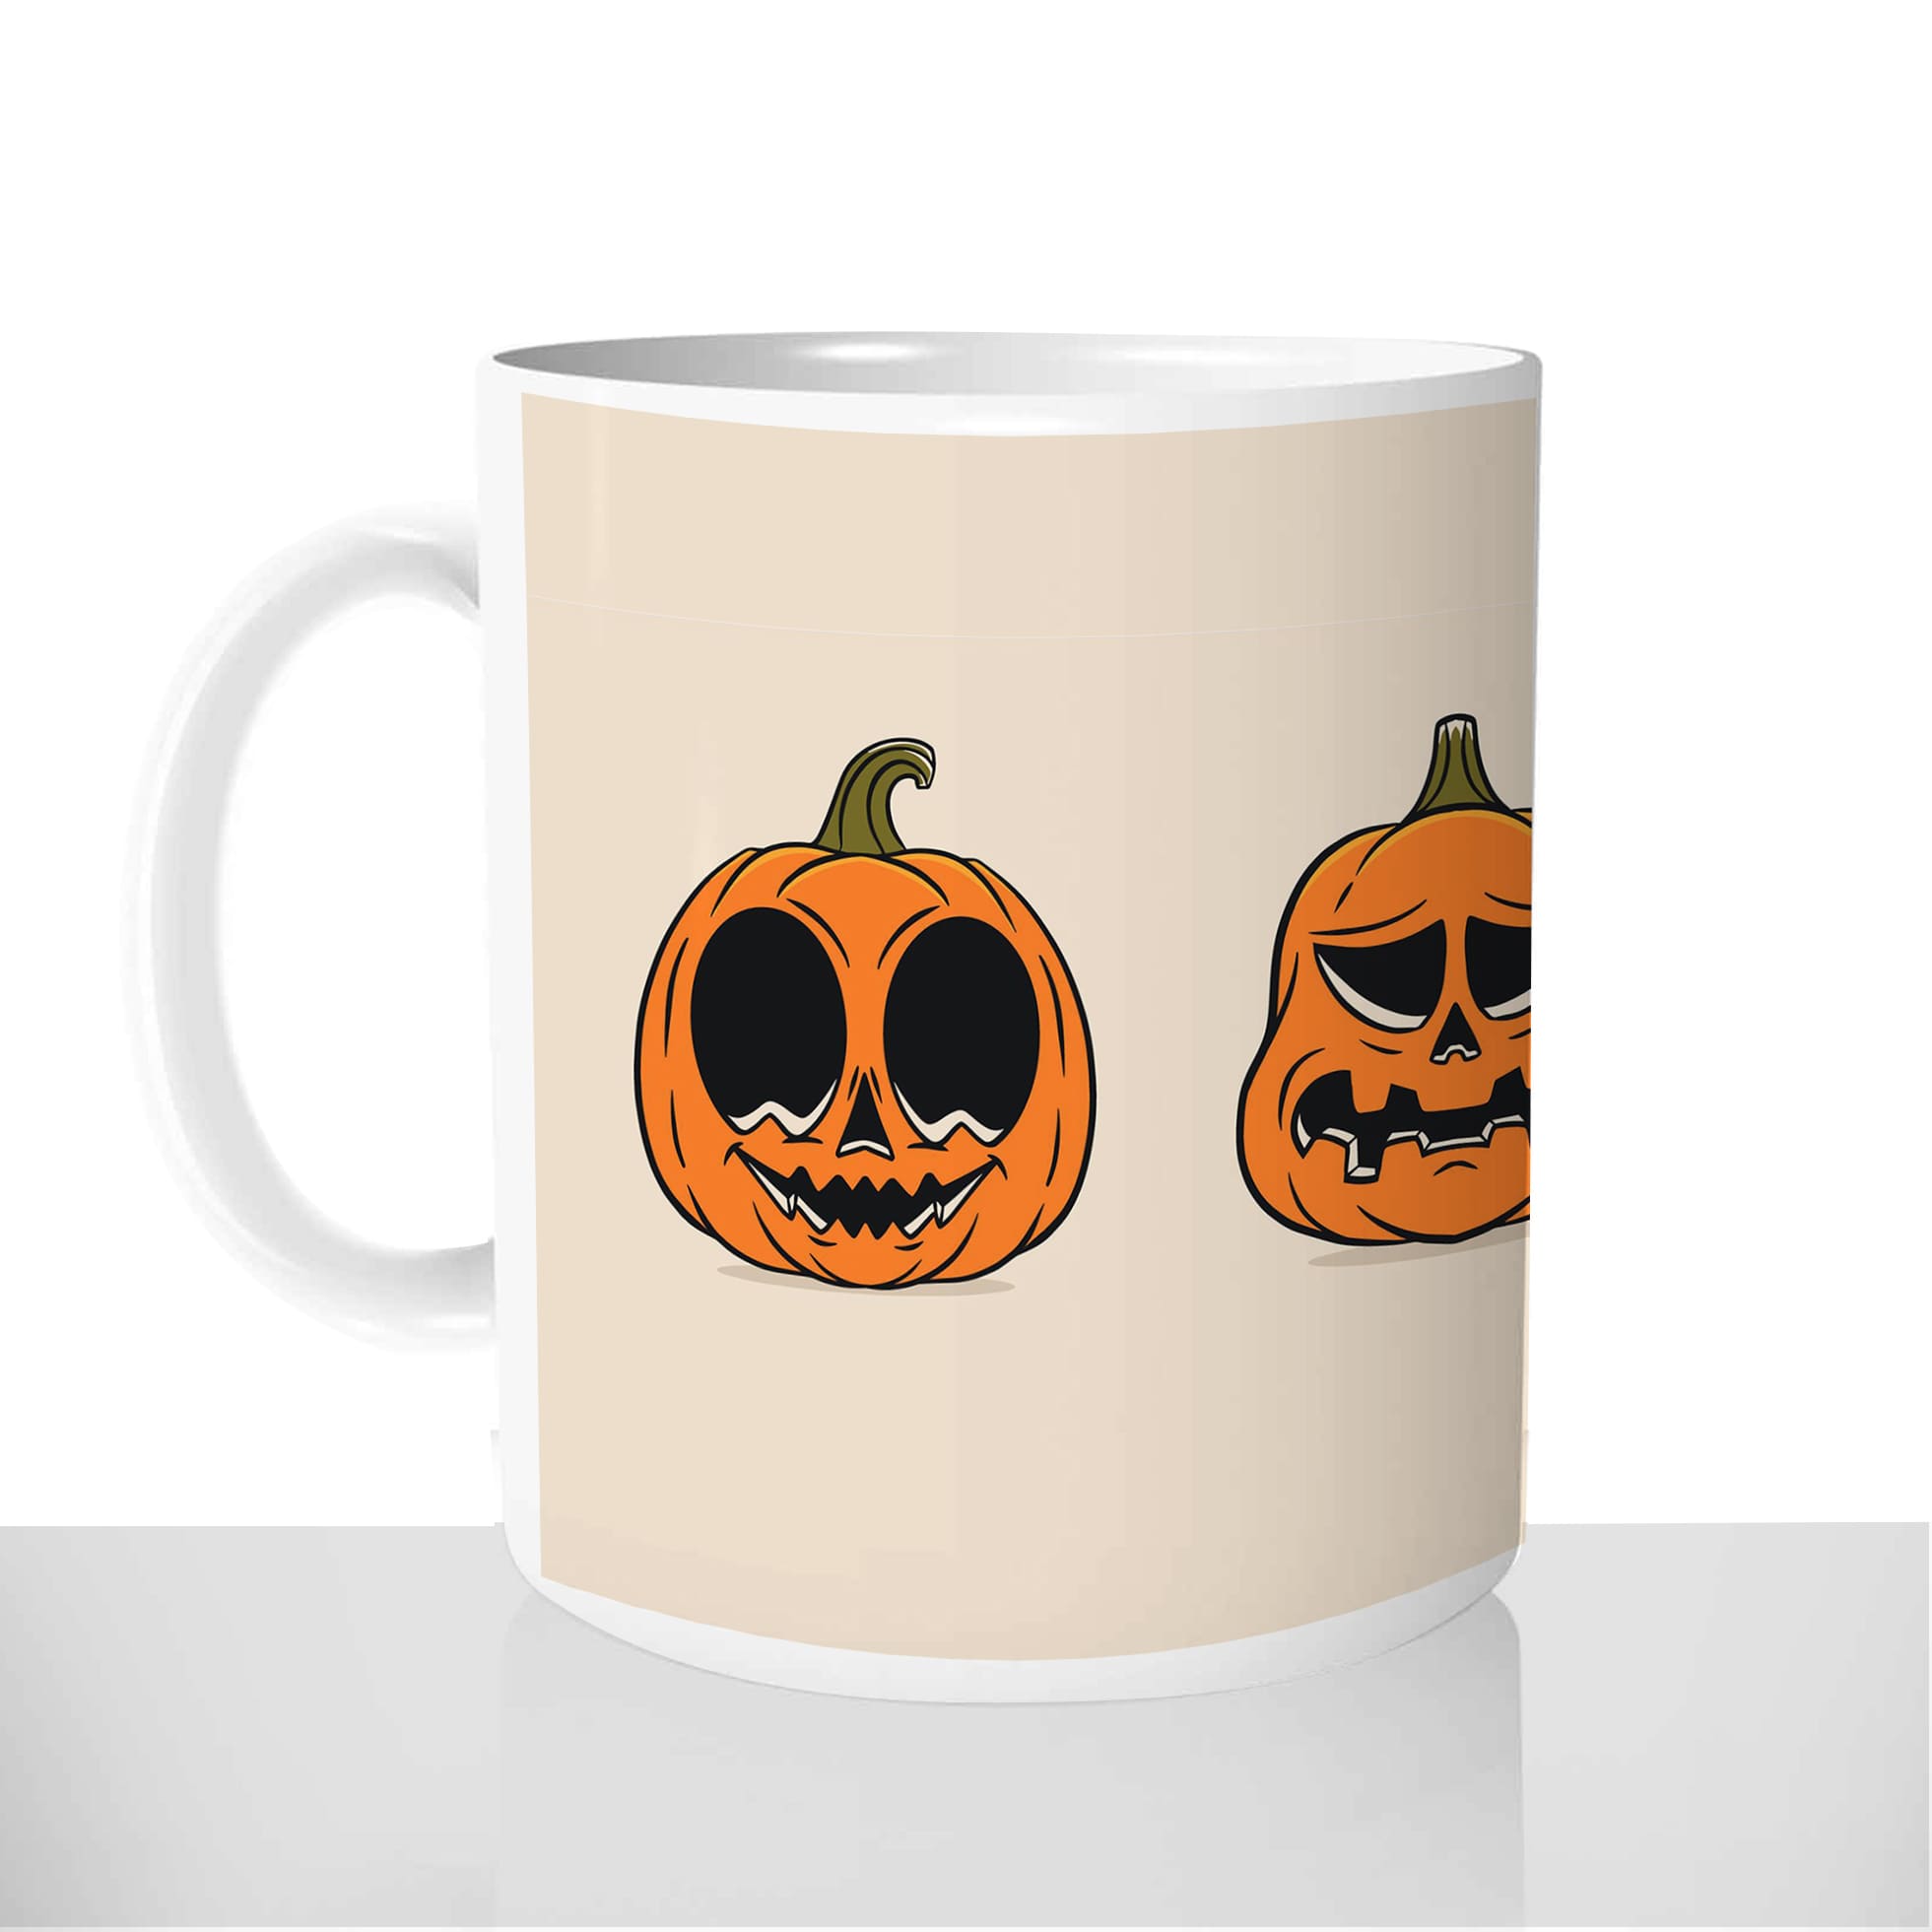 mug-blanc-personnalisable-thermoreactif-tasse-thermique-citrouilles-spooky-meilleur-déguisement-halloween-fun-idée-cadeau-original2